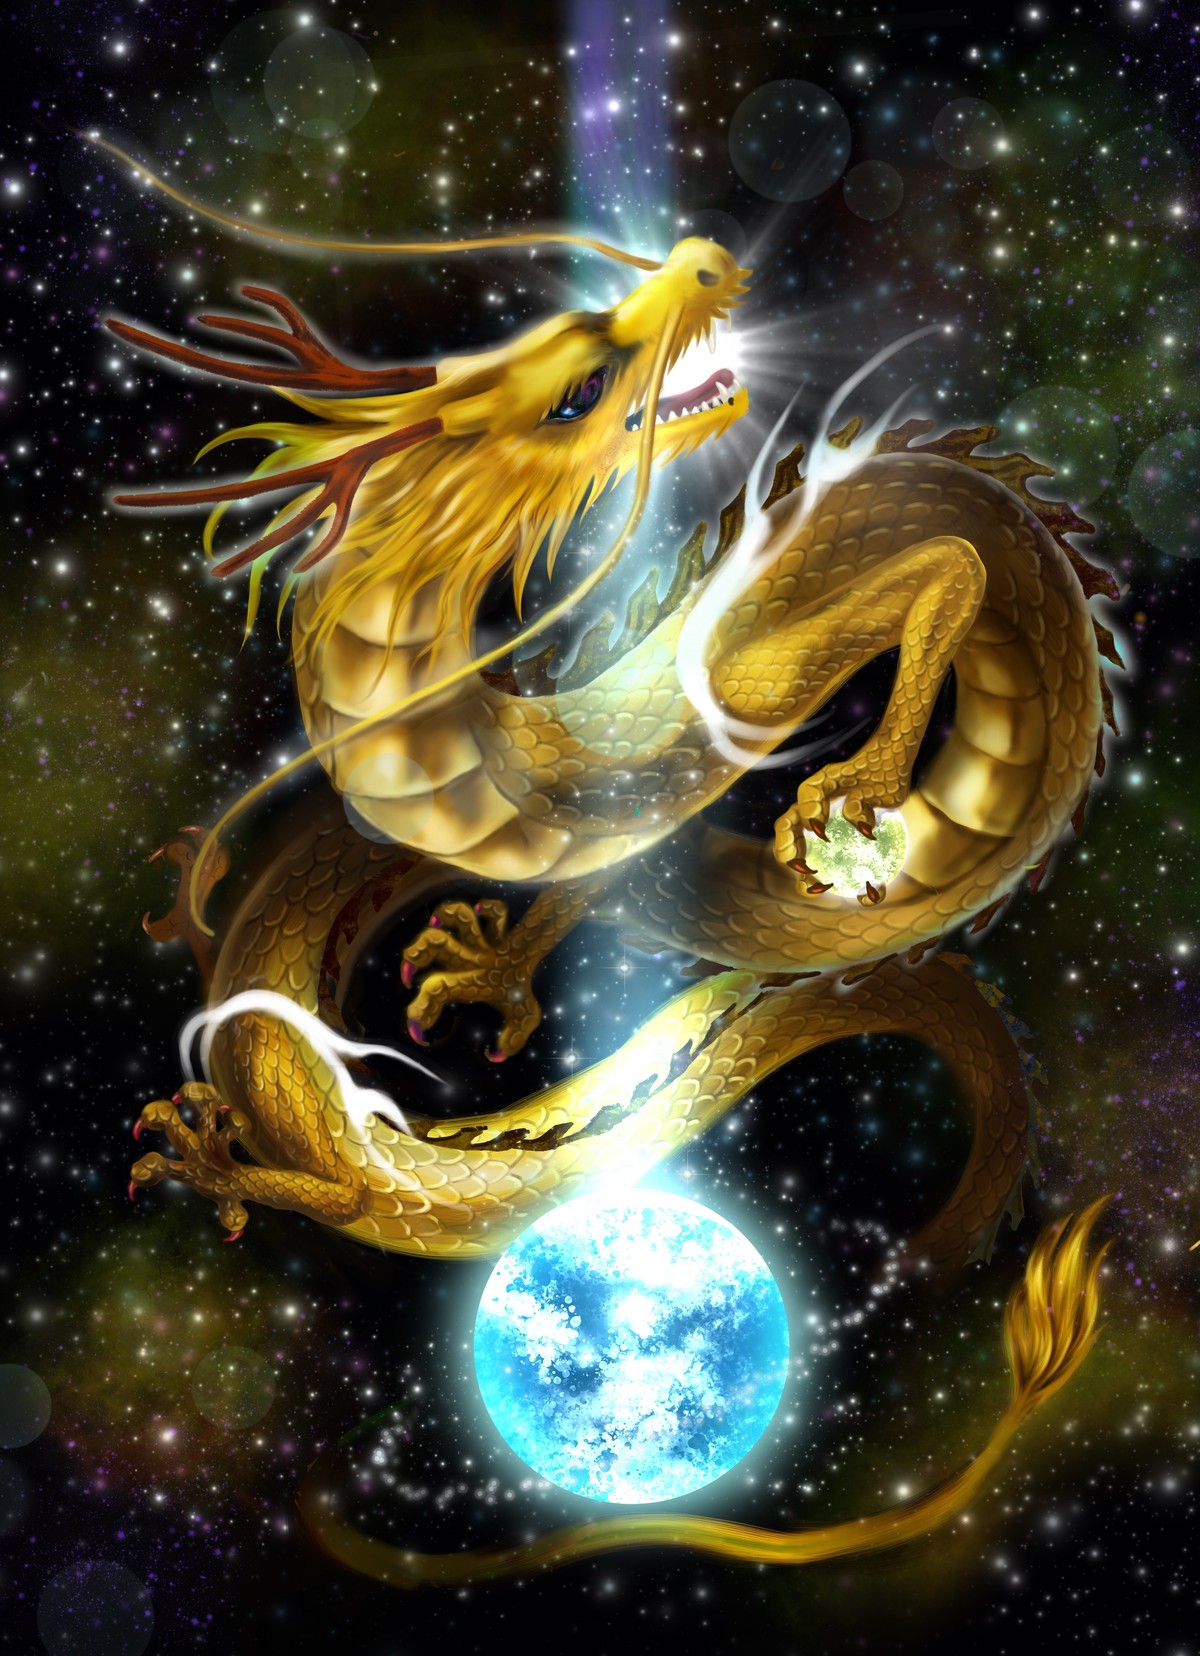 戸隠神社の九頭龍神社で龍の目出現 筆で龍神に命を宿らせる巫女 龍神画家弥生